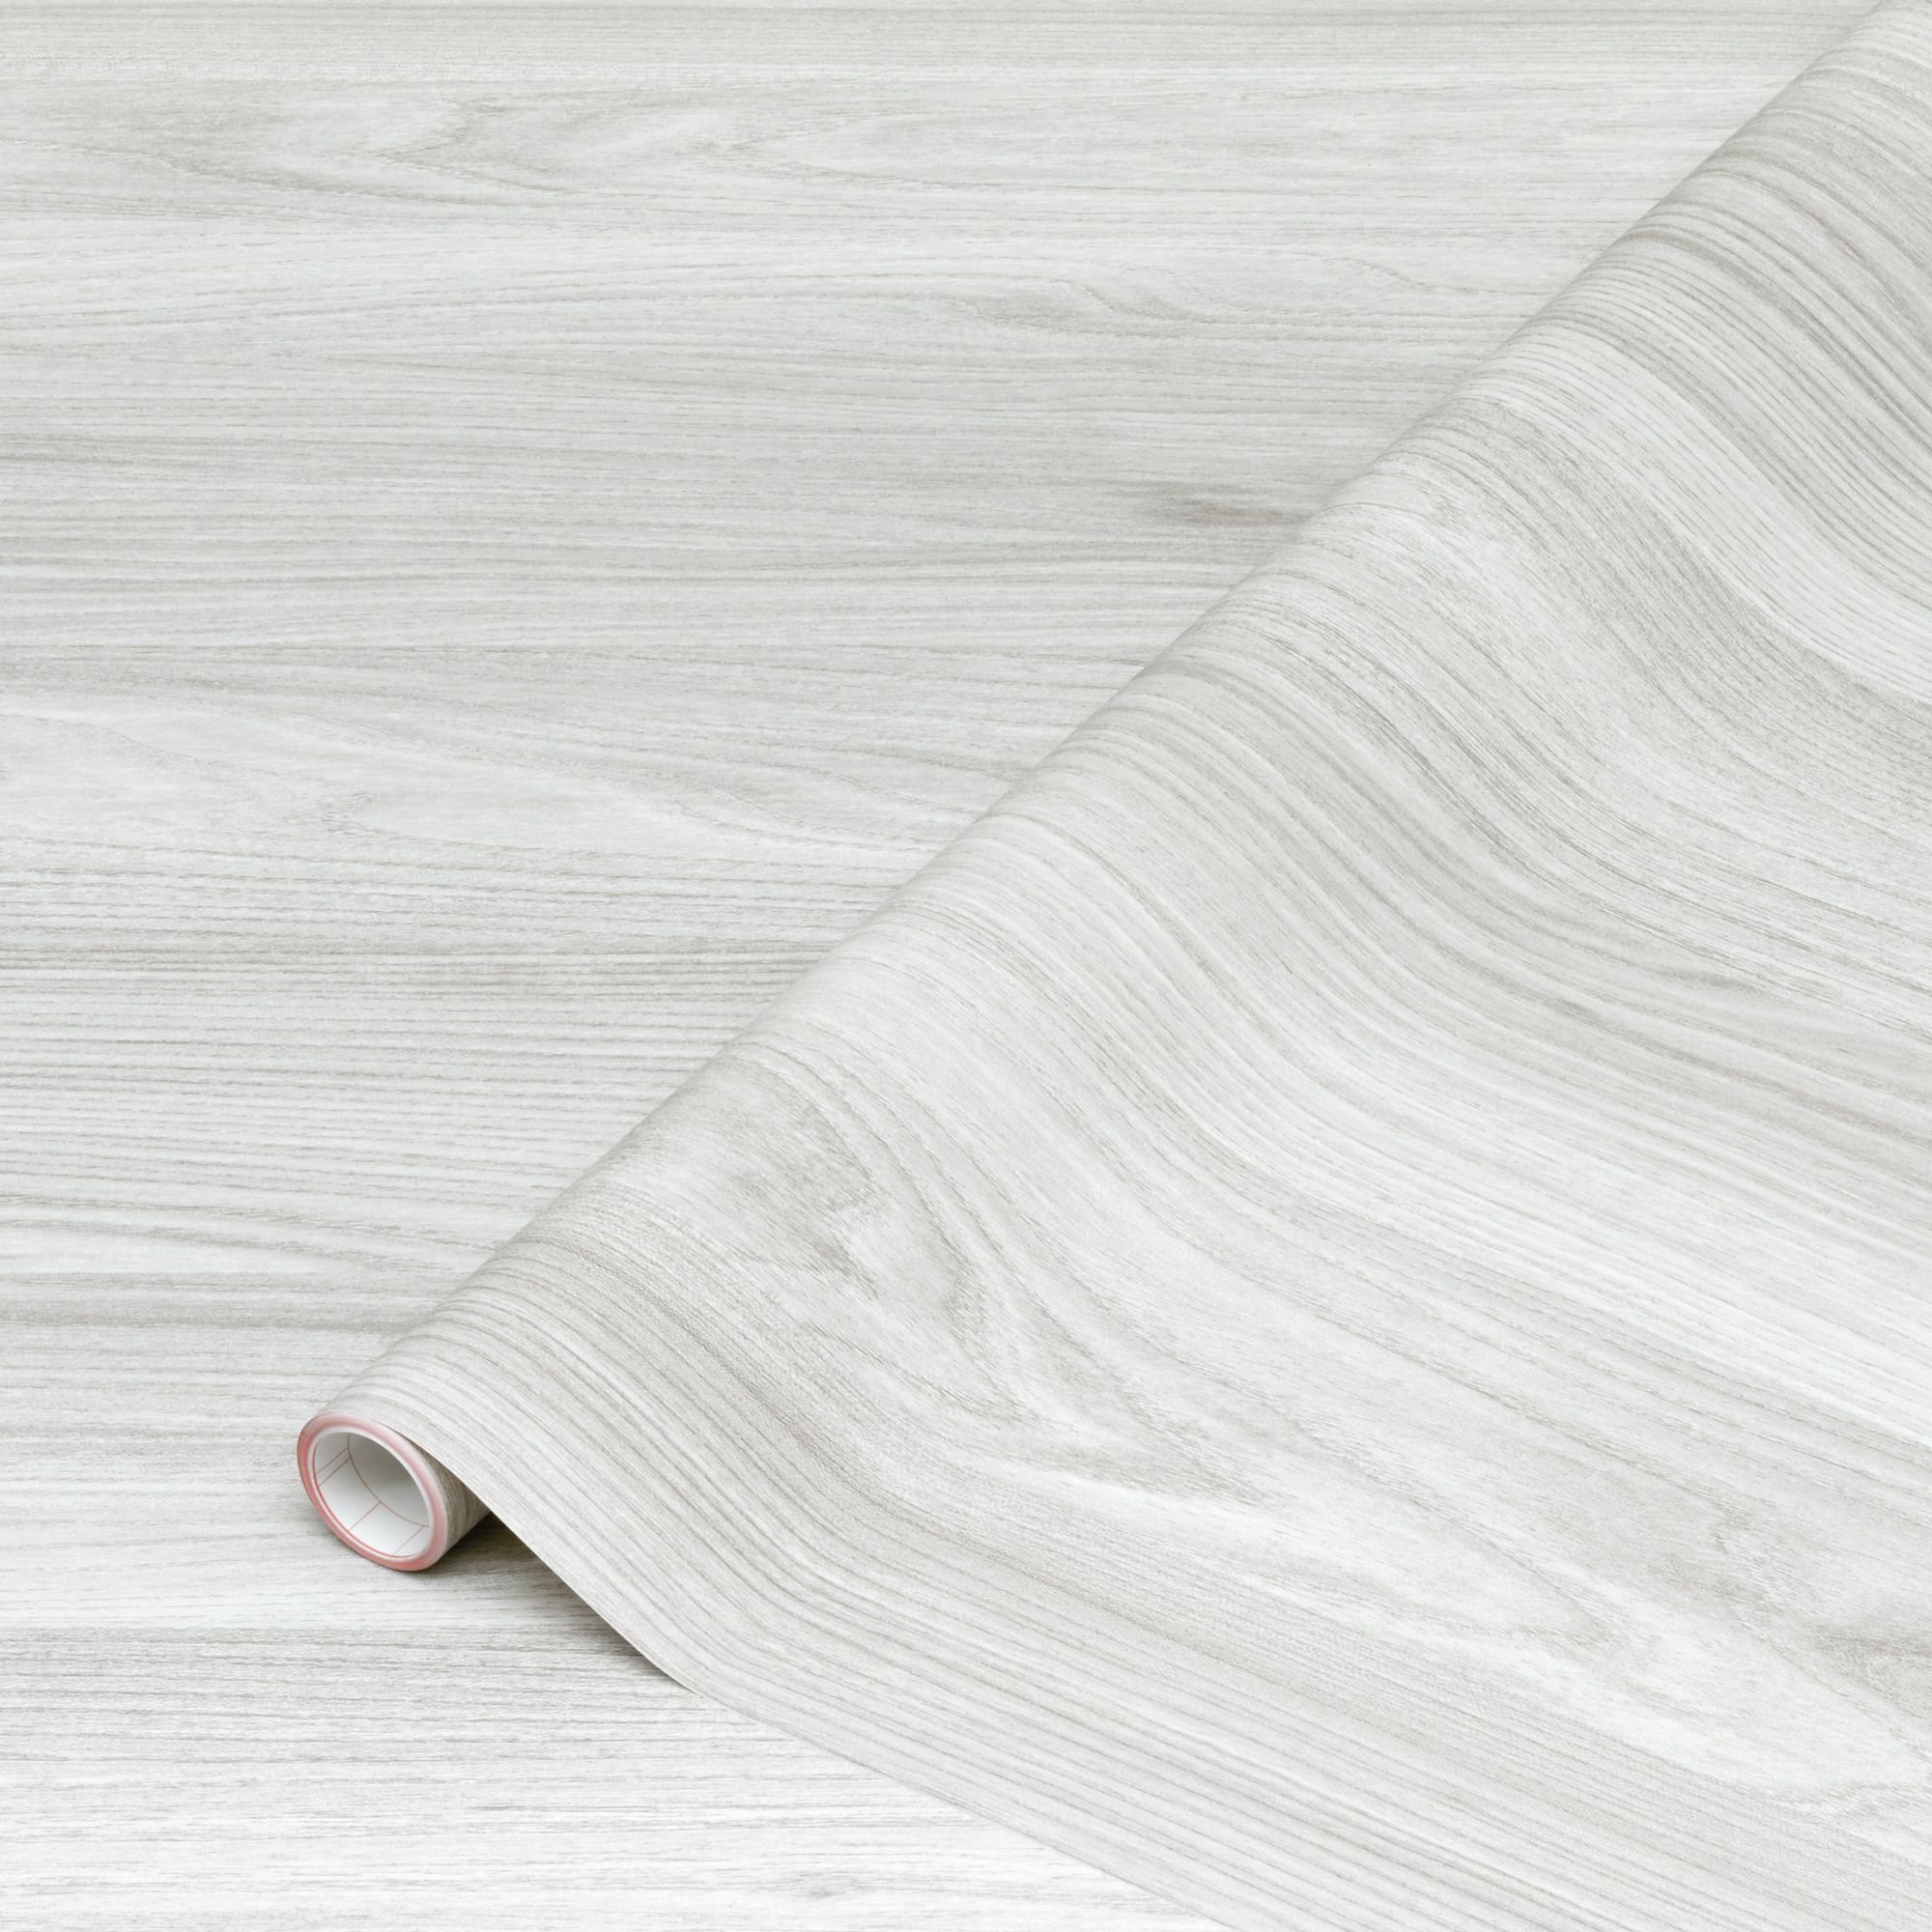 Super Matt Light Grey - Soft Touch Light Grey Panel — WOODca Design